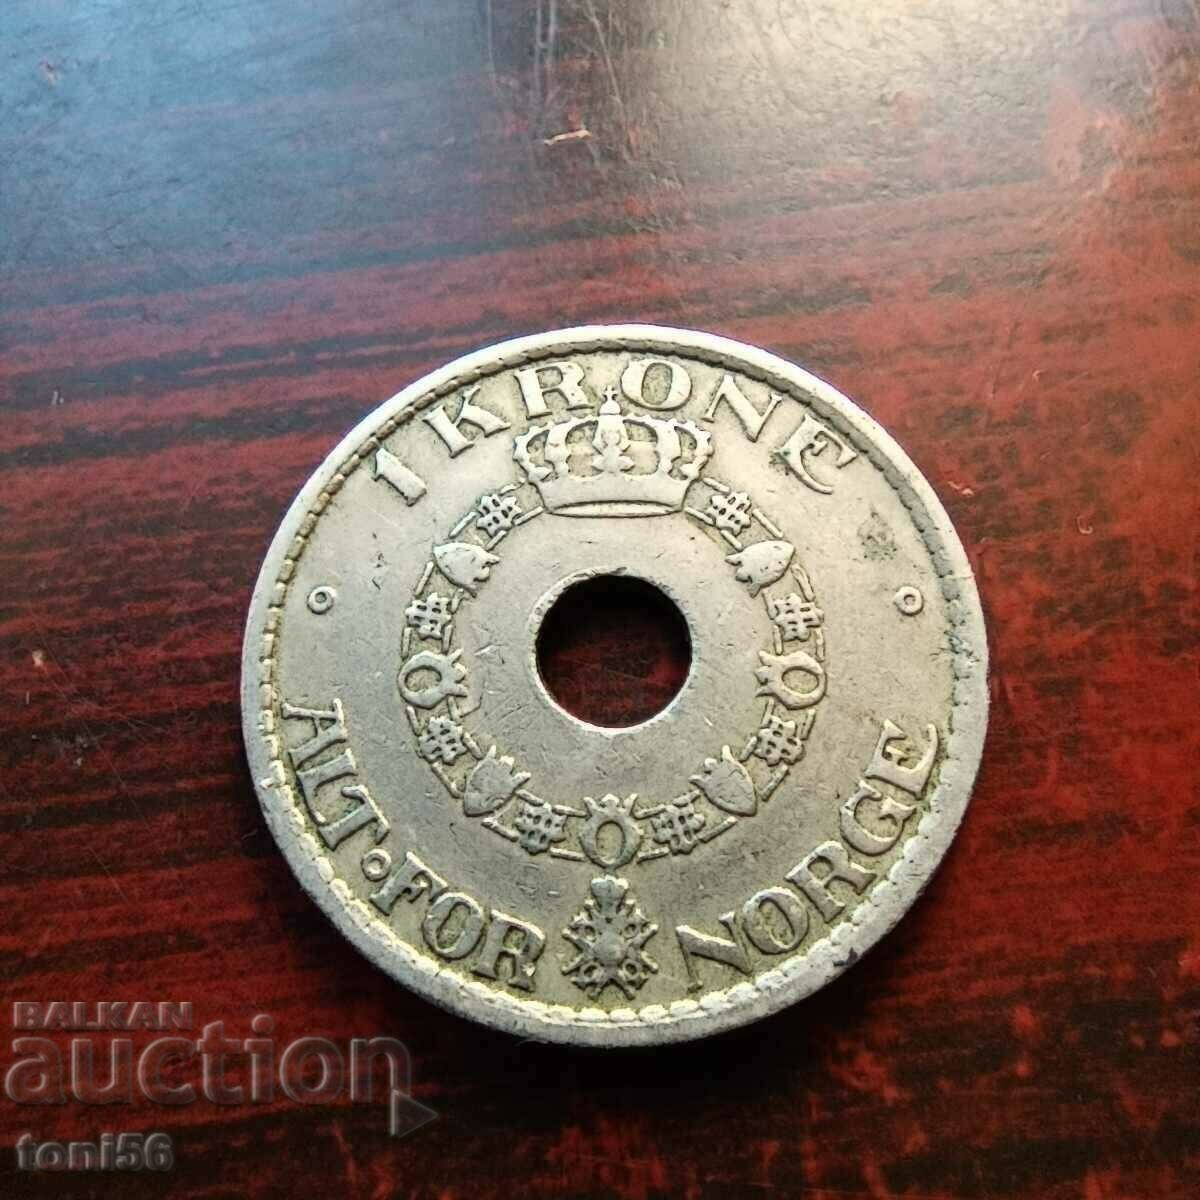 Norway 1 kroner 1925